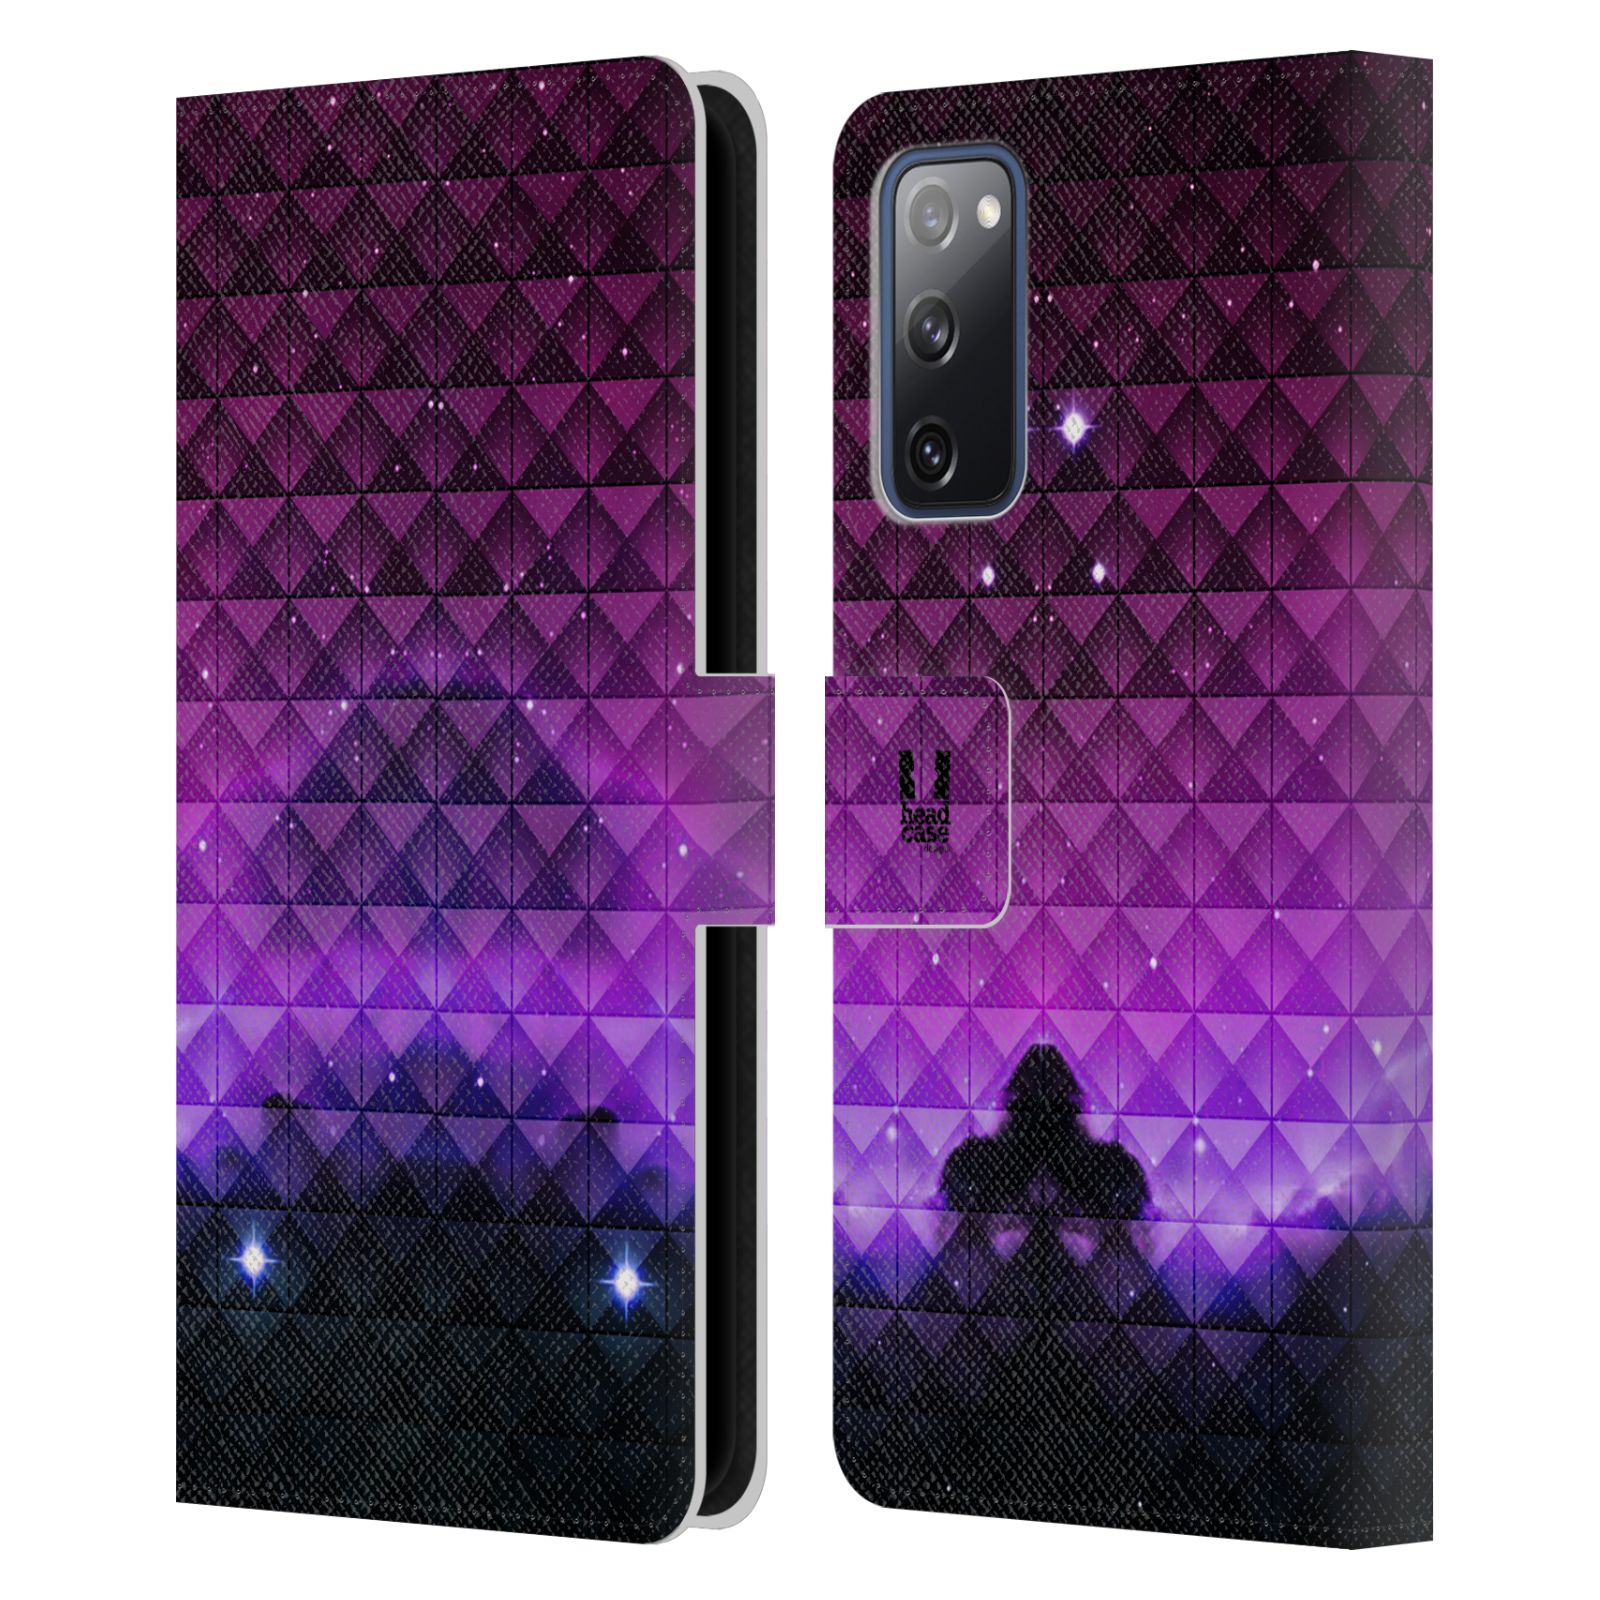 Pouzdro HEAD CASE na mobil Samsung Galaxy S20 FE / S20 FE 5G barevná vesmírná mlhovina fialová a černá